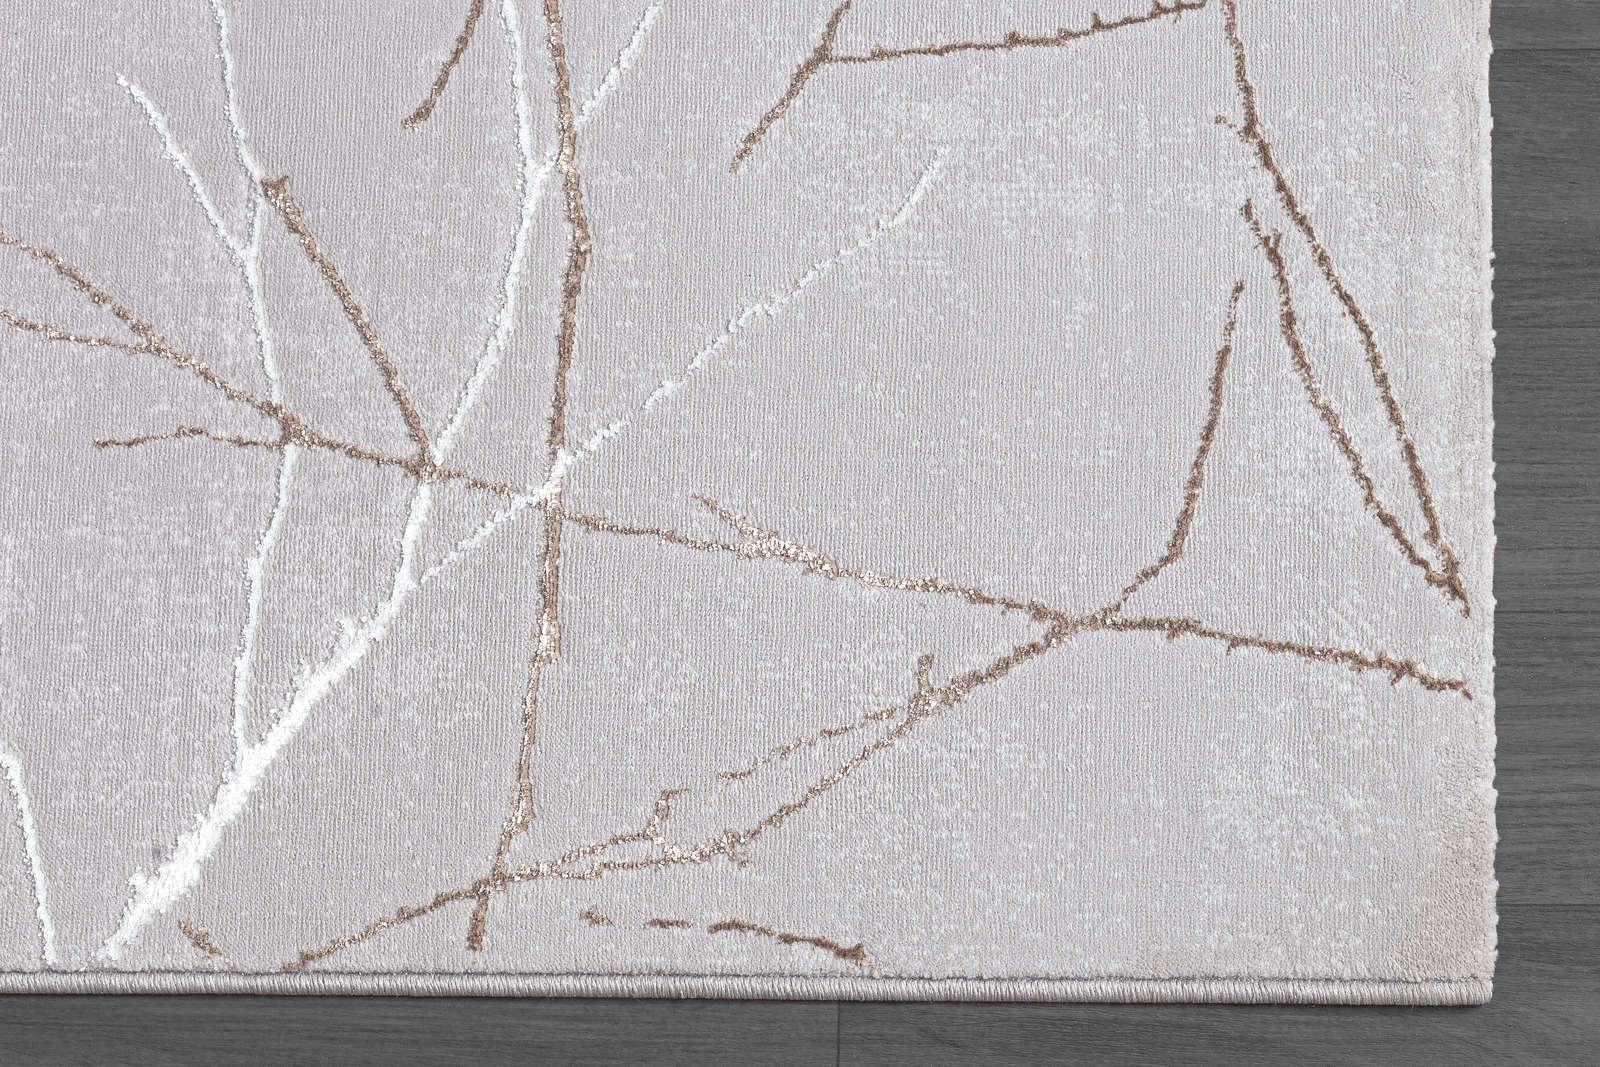             Hoogpolig tapijt met patroon in grijs - 200 x 140 cm
        